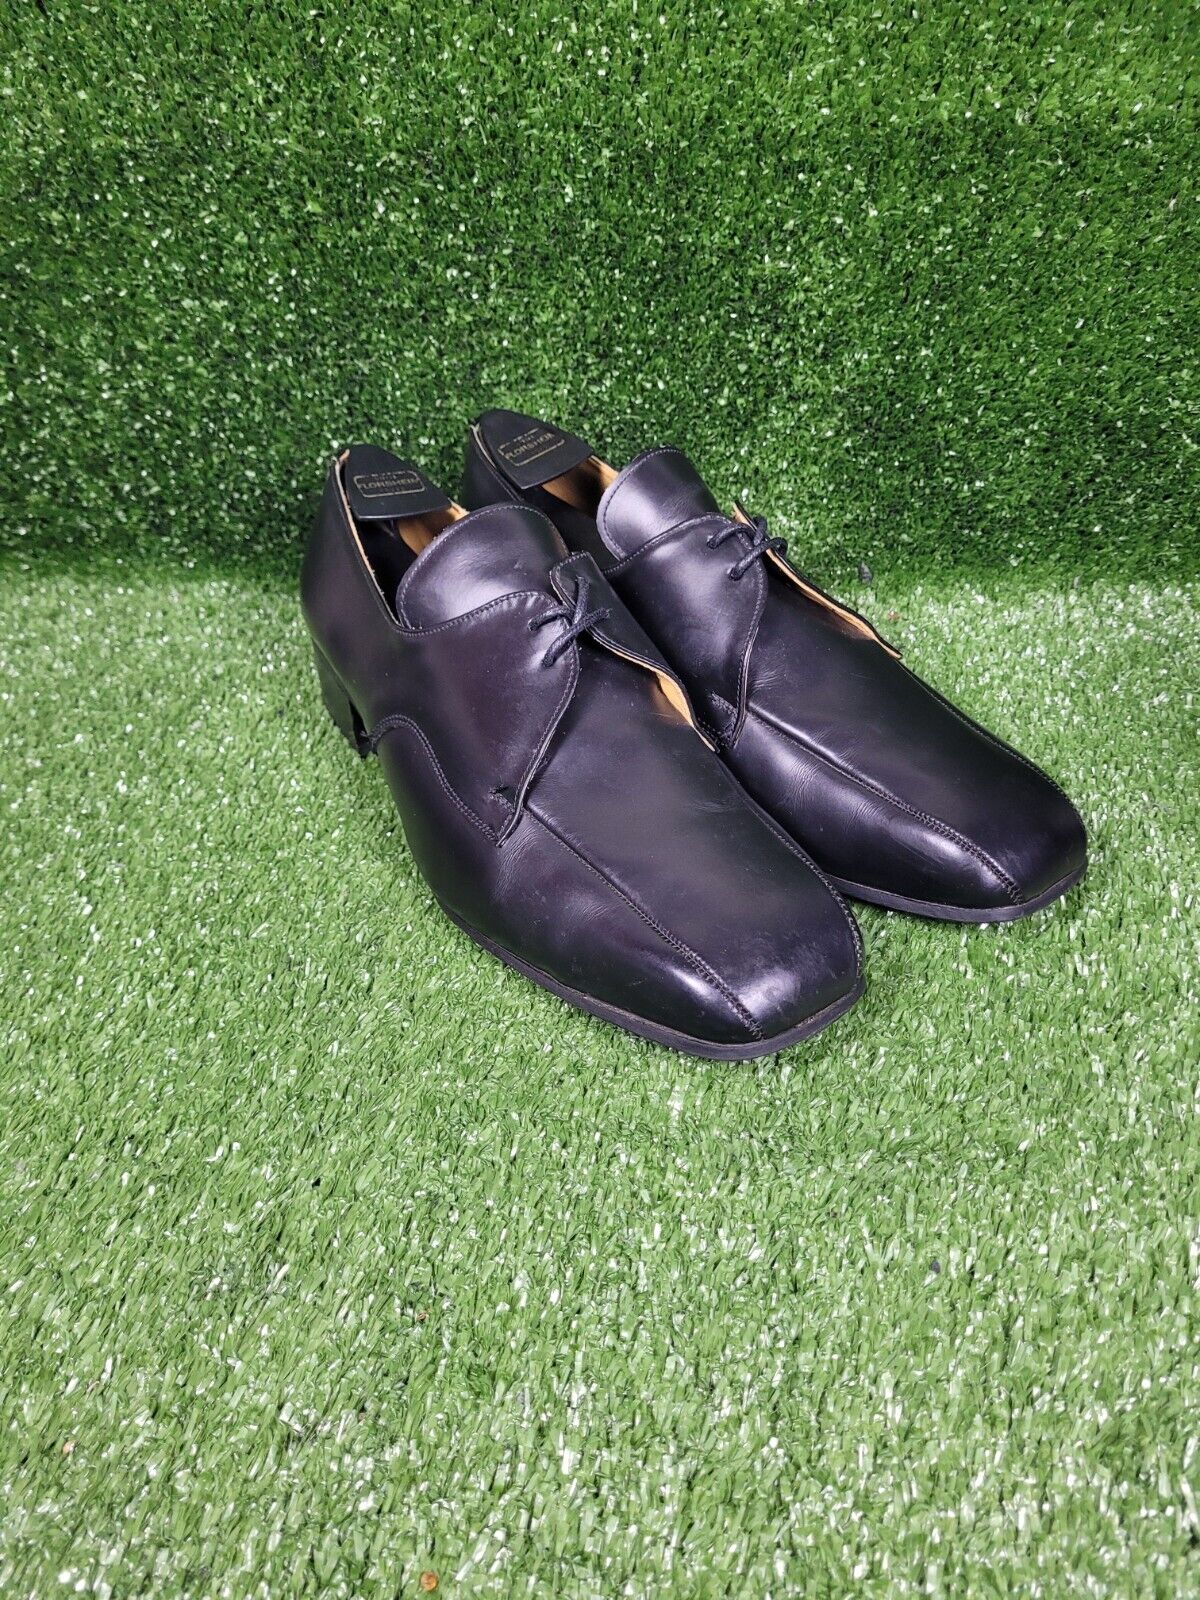 Vintage John Fluevog George Cox Black Leather Dress Shoes Made In England US 12